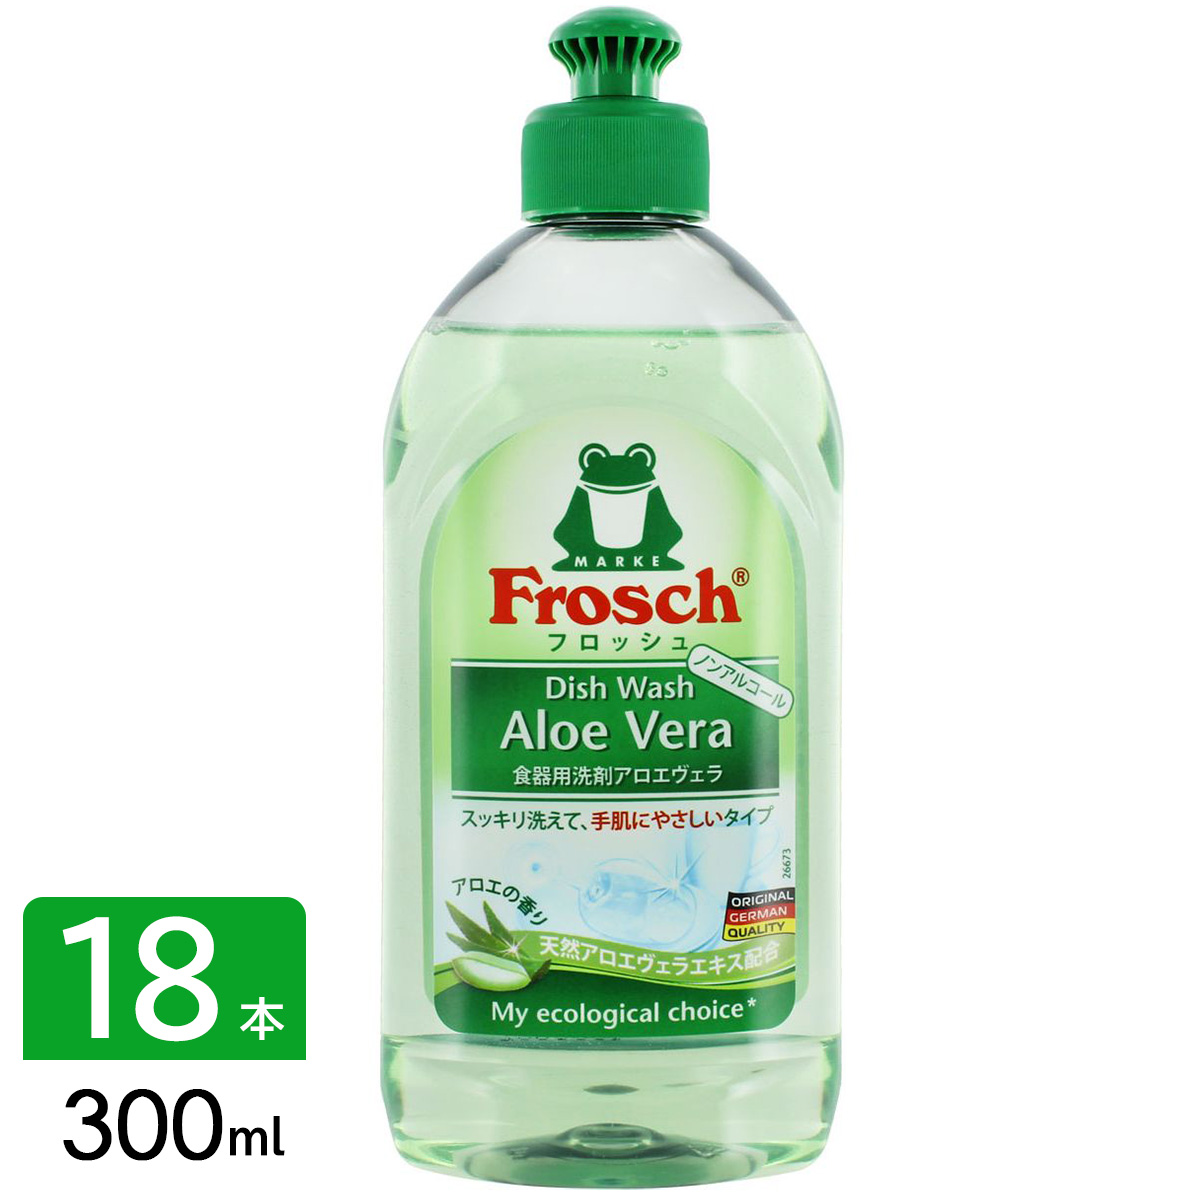 フロッシュ frosch 食器用洗剤 台所用洗剤 アロエヴェラ 本体 300ml×18本